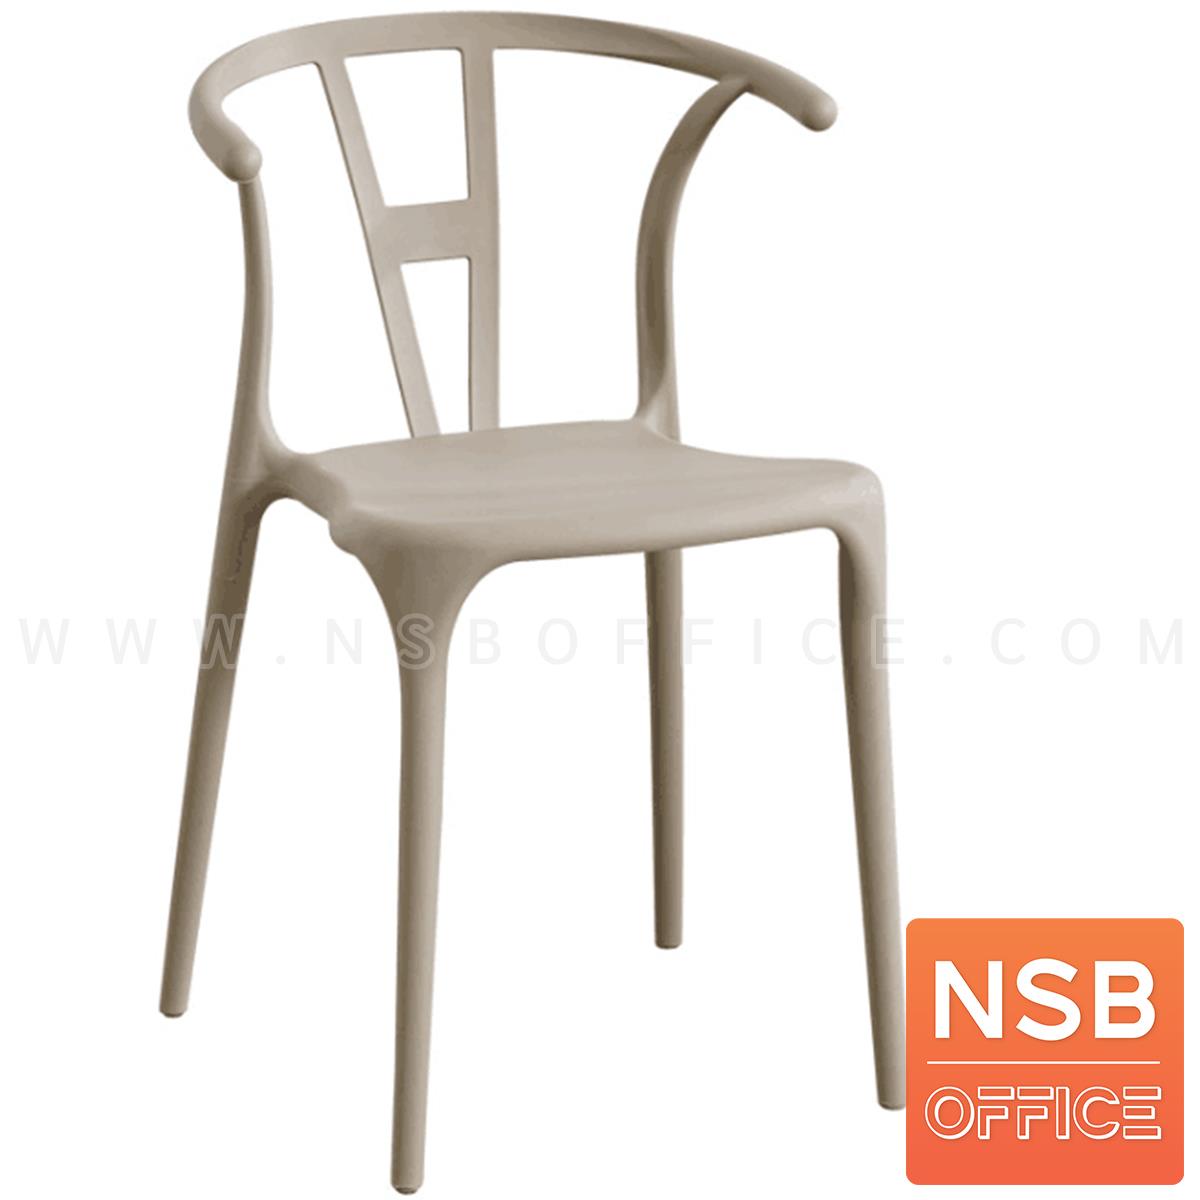 เก้าอี้โมเดิร์นพลาสติก รุ่น Benld (เบลนด์) ขนาด 42W cm. 